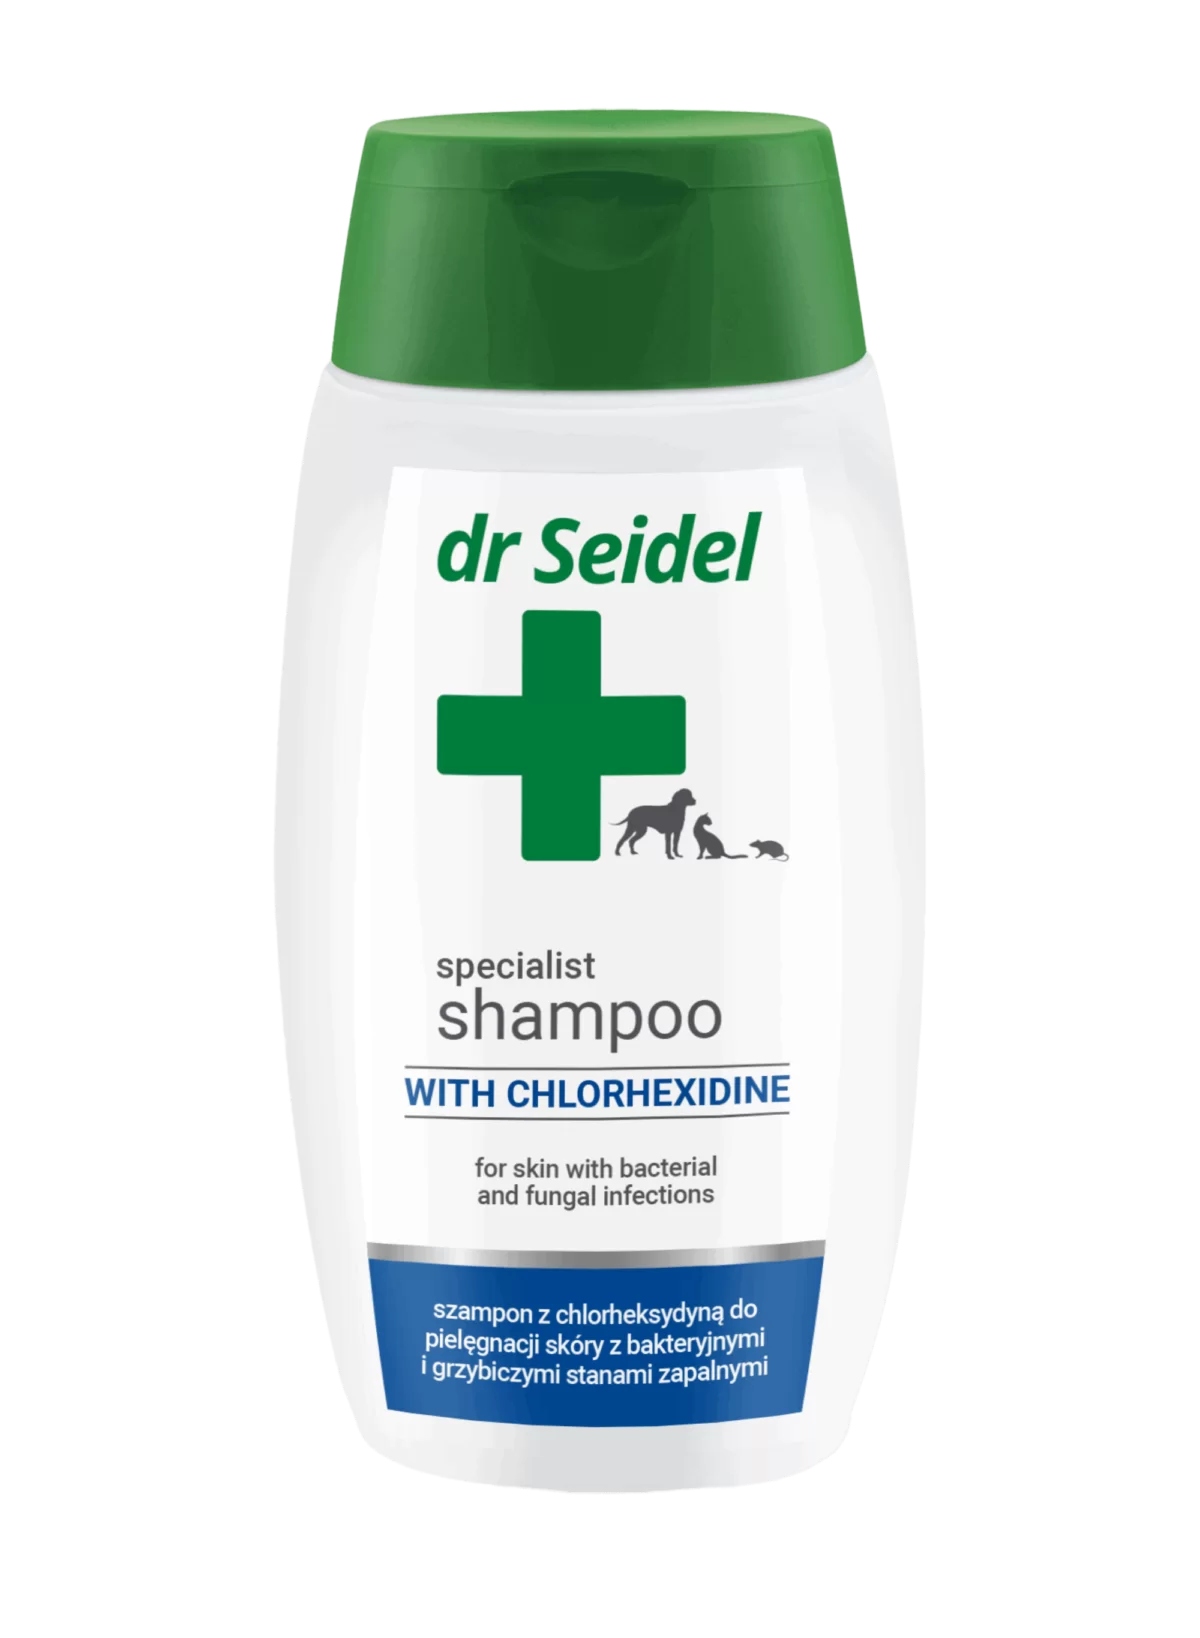 dermofuture df5 szampon przyspieszający wzrost i zapobiegający wypadaniu włosów